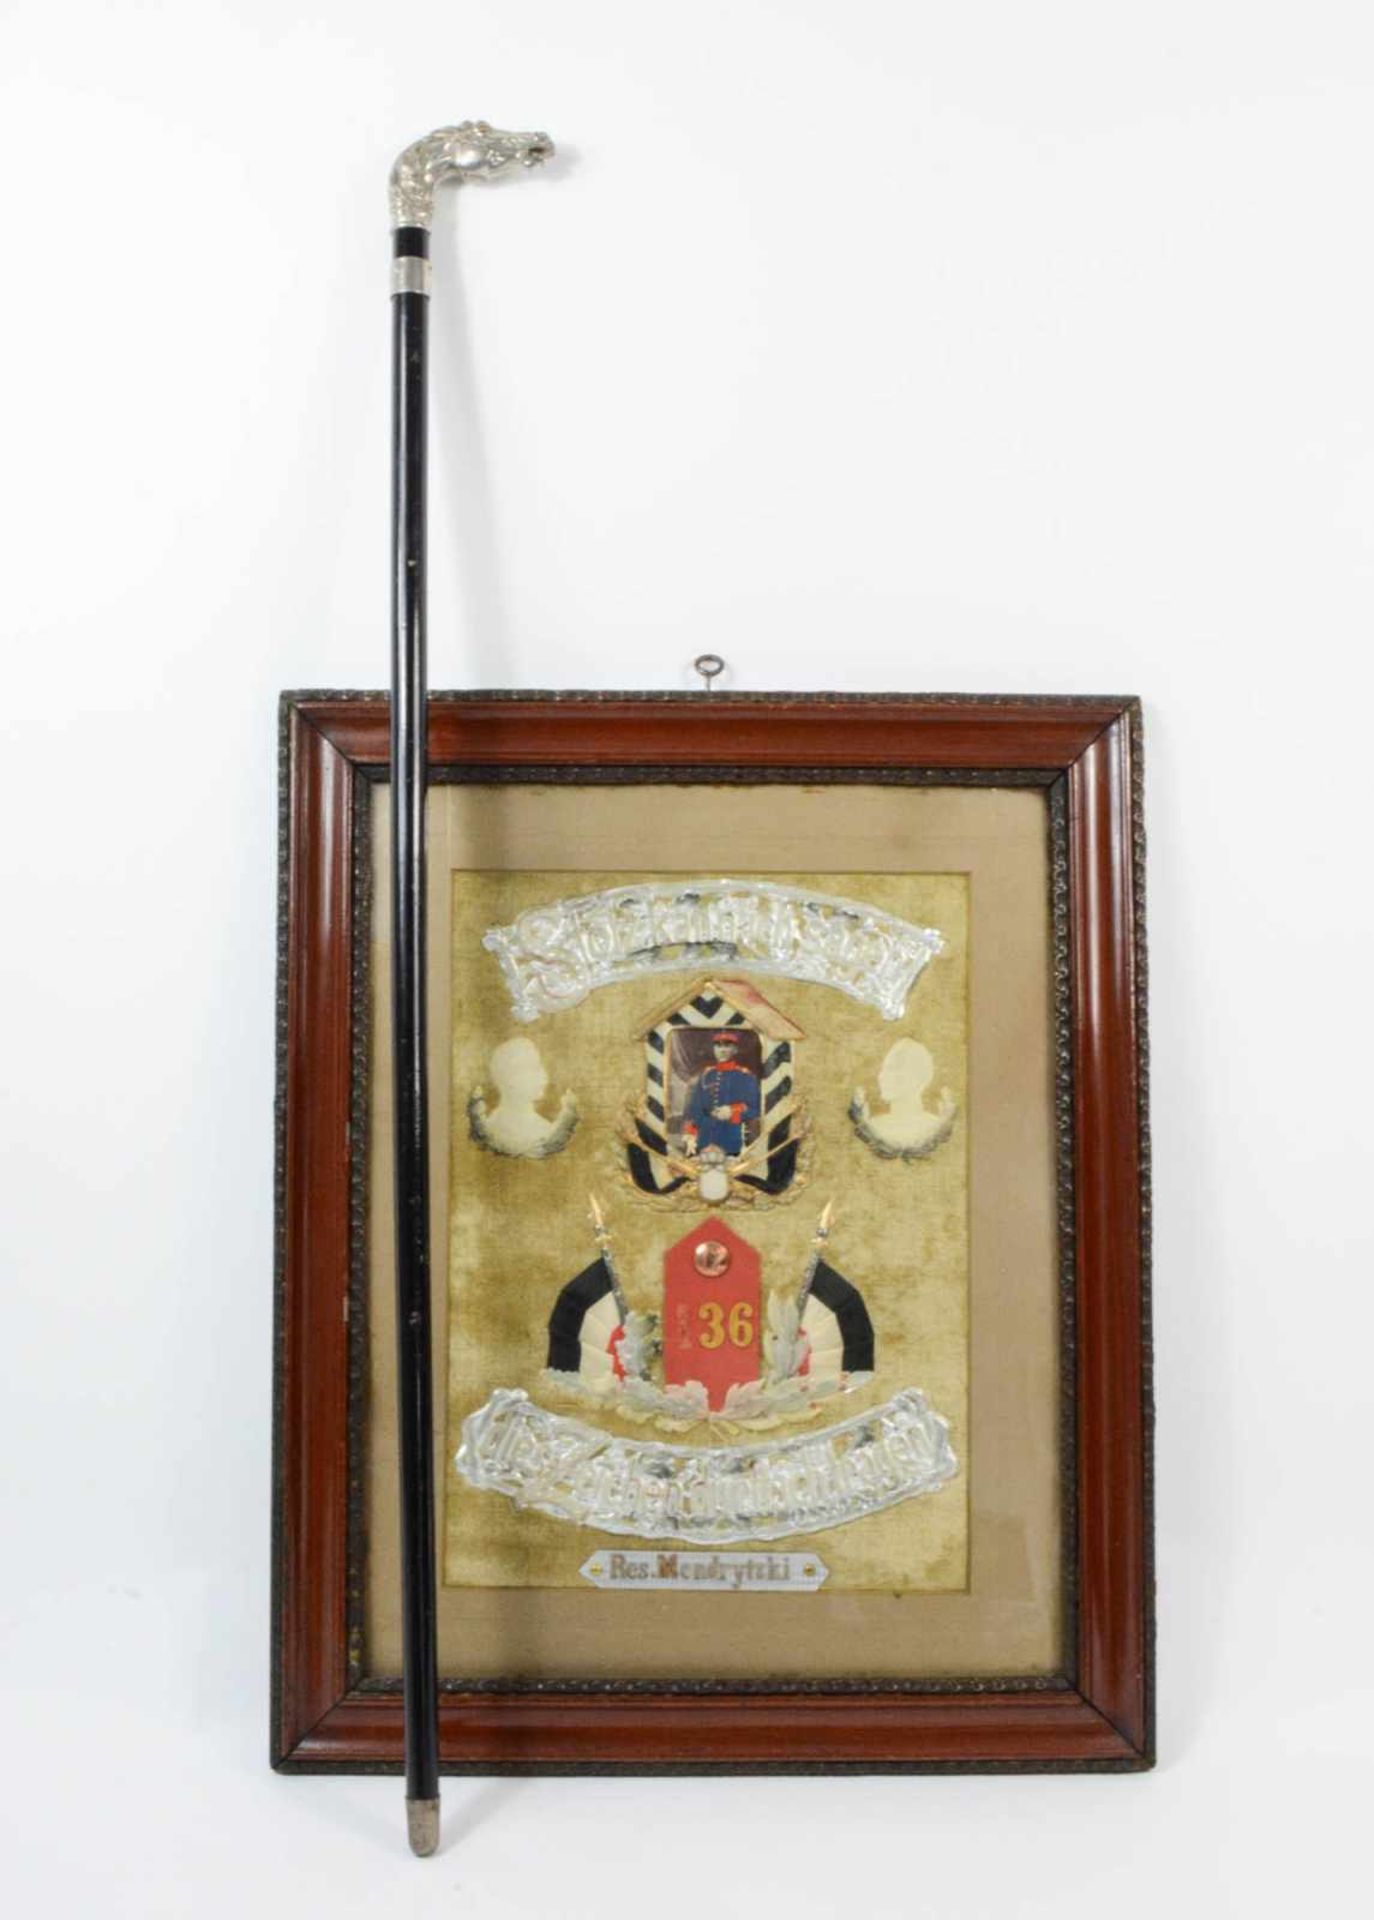 Reservistenbild und -Stock 1. Weltkrieg, Stickarbeit mit Spruchband und Foto, 39 cm x 28 cm